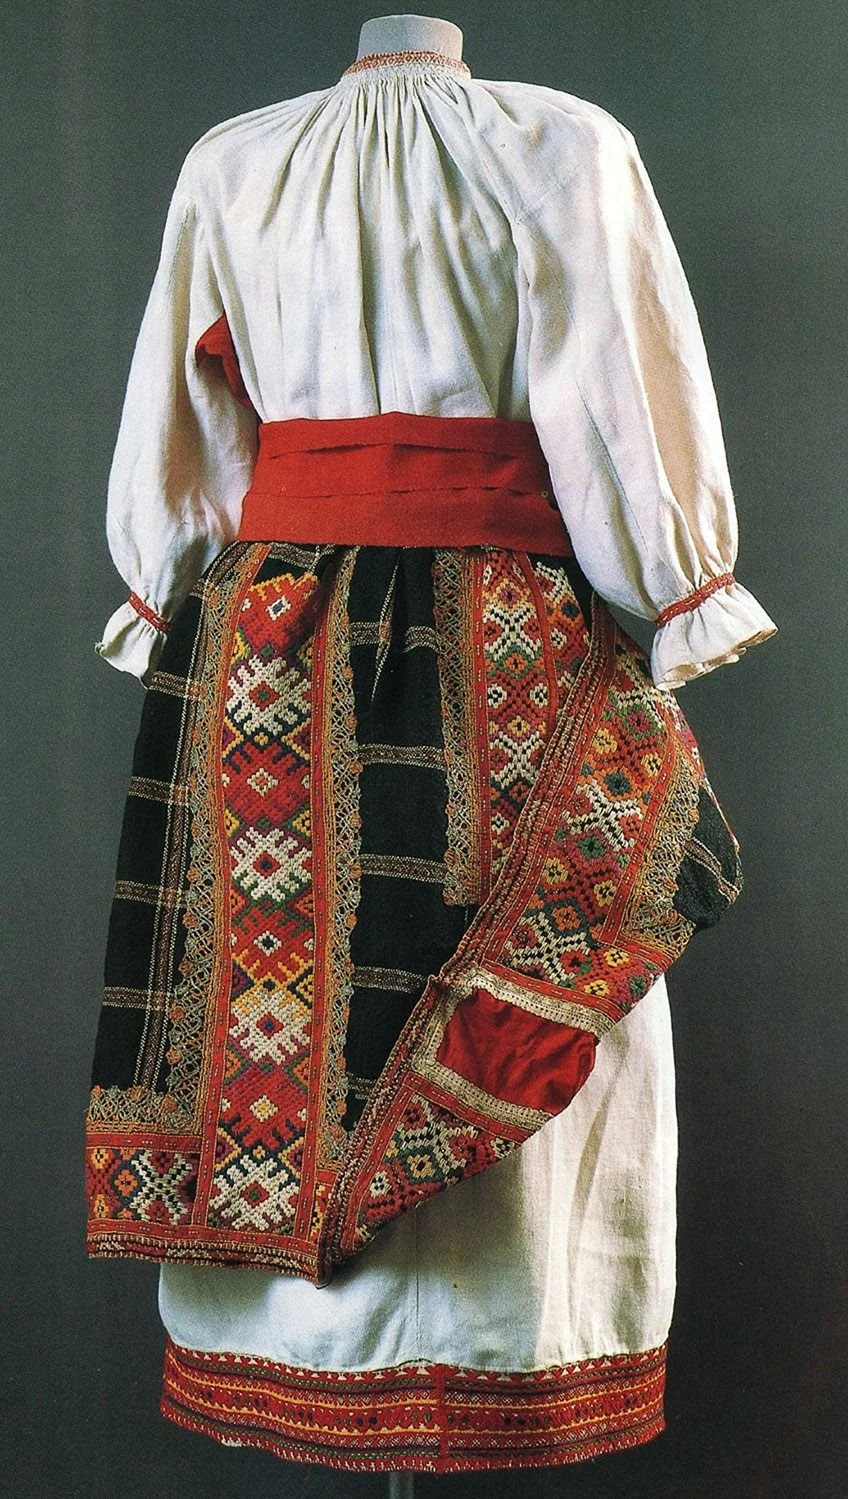 Понева одежда в древней Руси